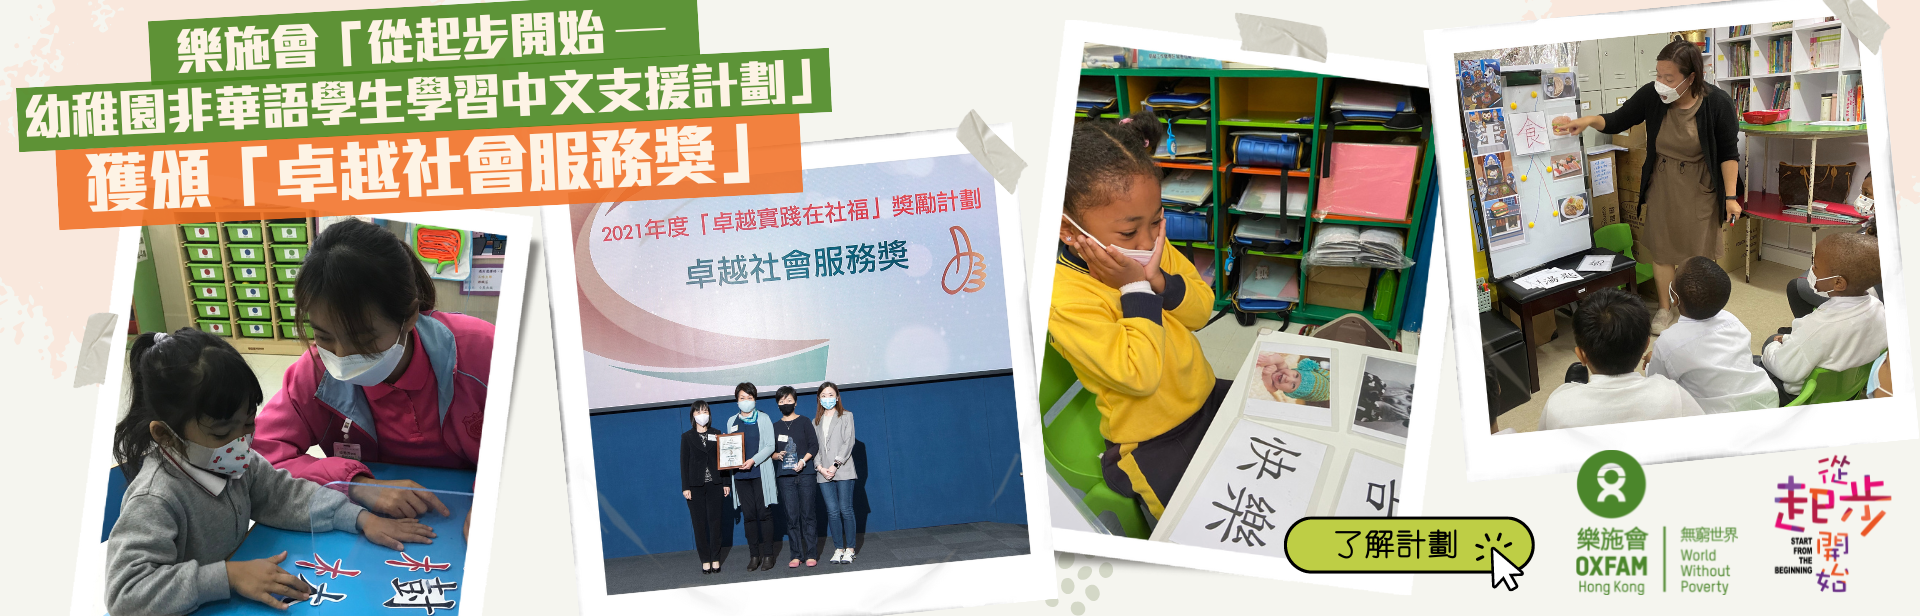 乐施会「从起步开始 — 幼稚园非华语学生学习中文支援计划」 获颁「卓越社会服务奖」